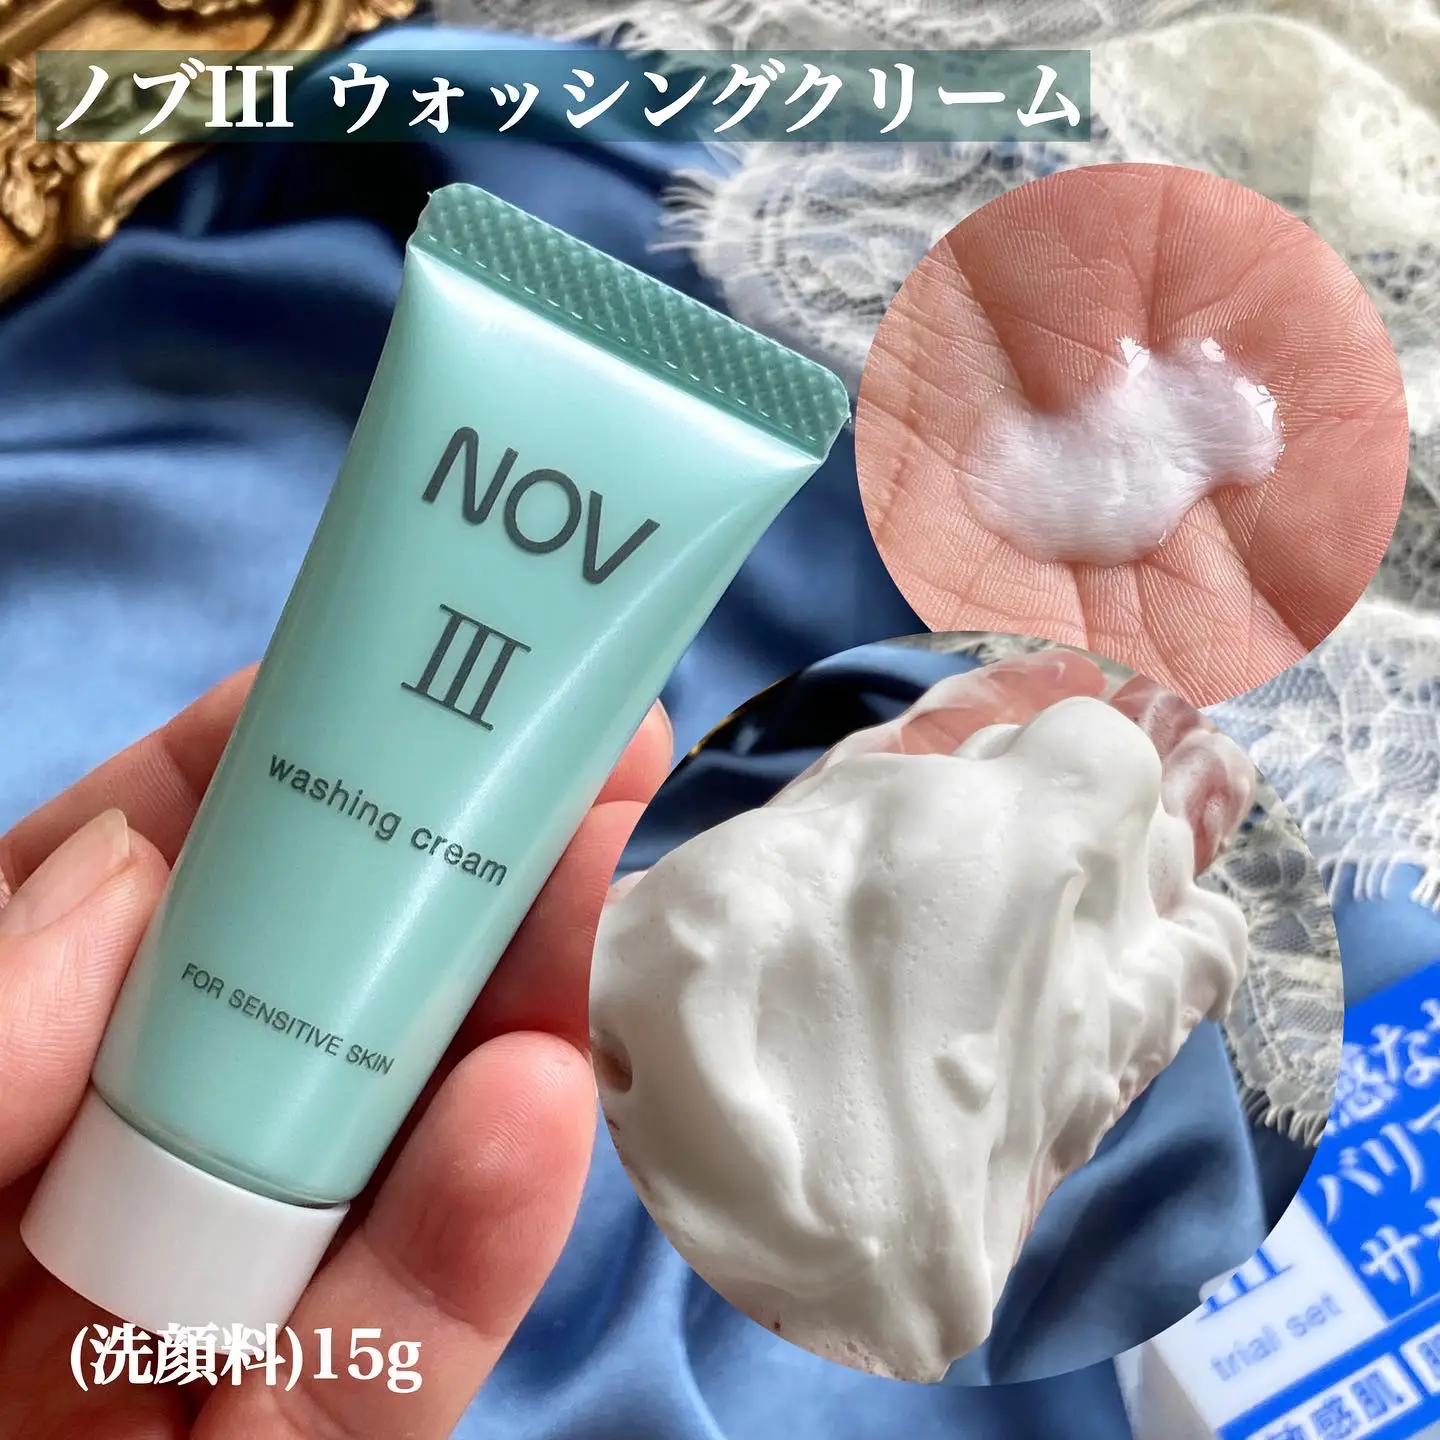 ノブⅢ ウォッシングクリーム 洗顔料 - スキンケア/基礎化粧品